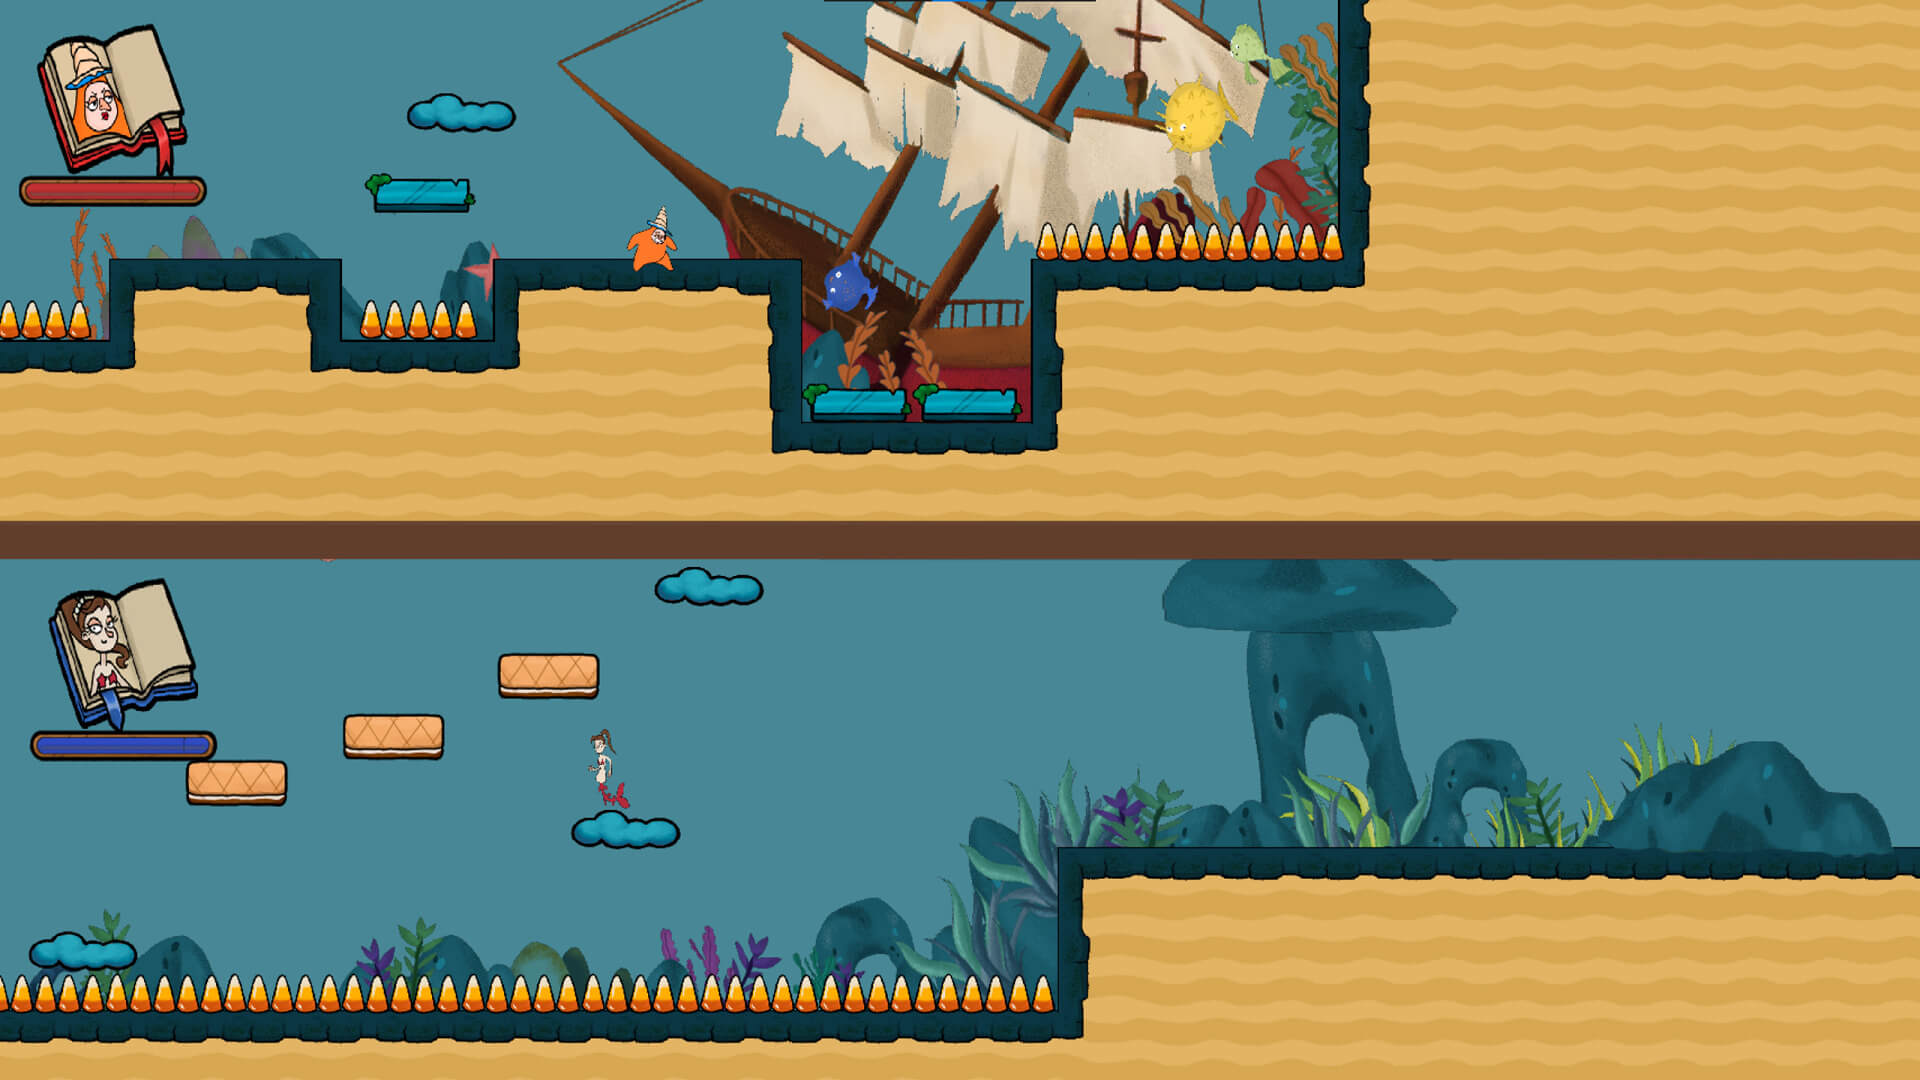 Dos jugadoras corren a por la poción mágica, cada cual avanza a su ritmo en un mundo marino, lleno de algas, rocas y hasta un barco hundido.